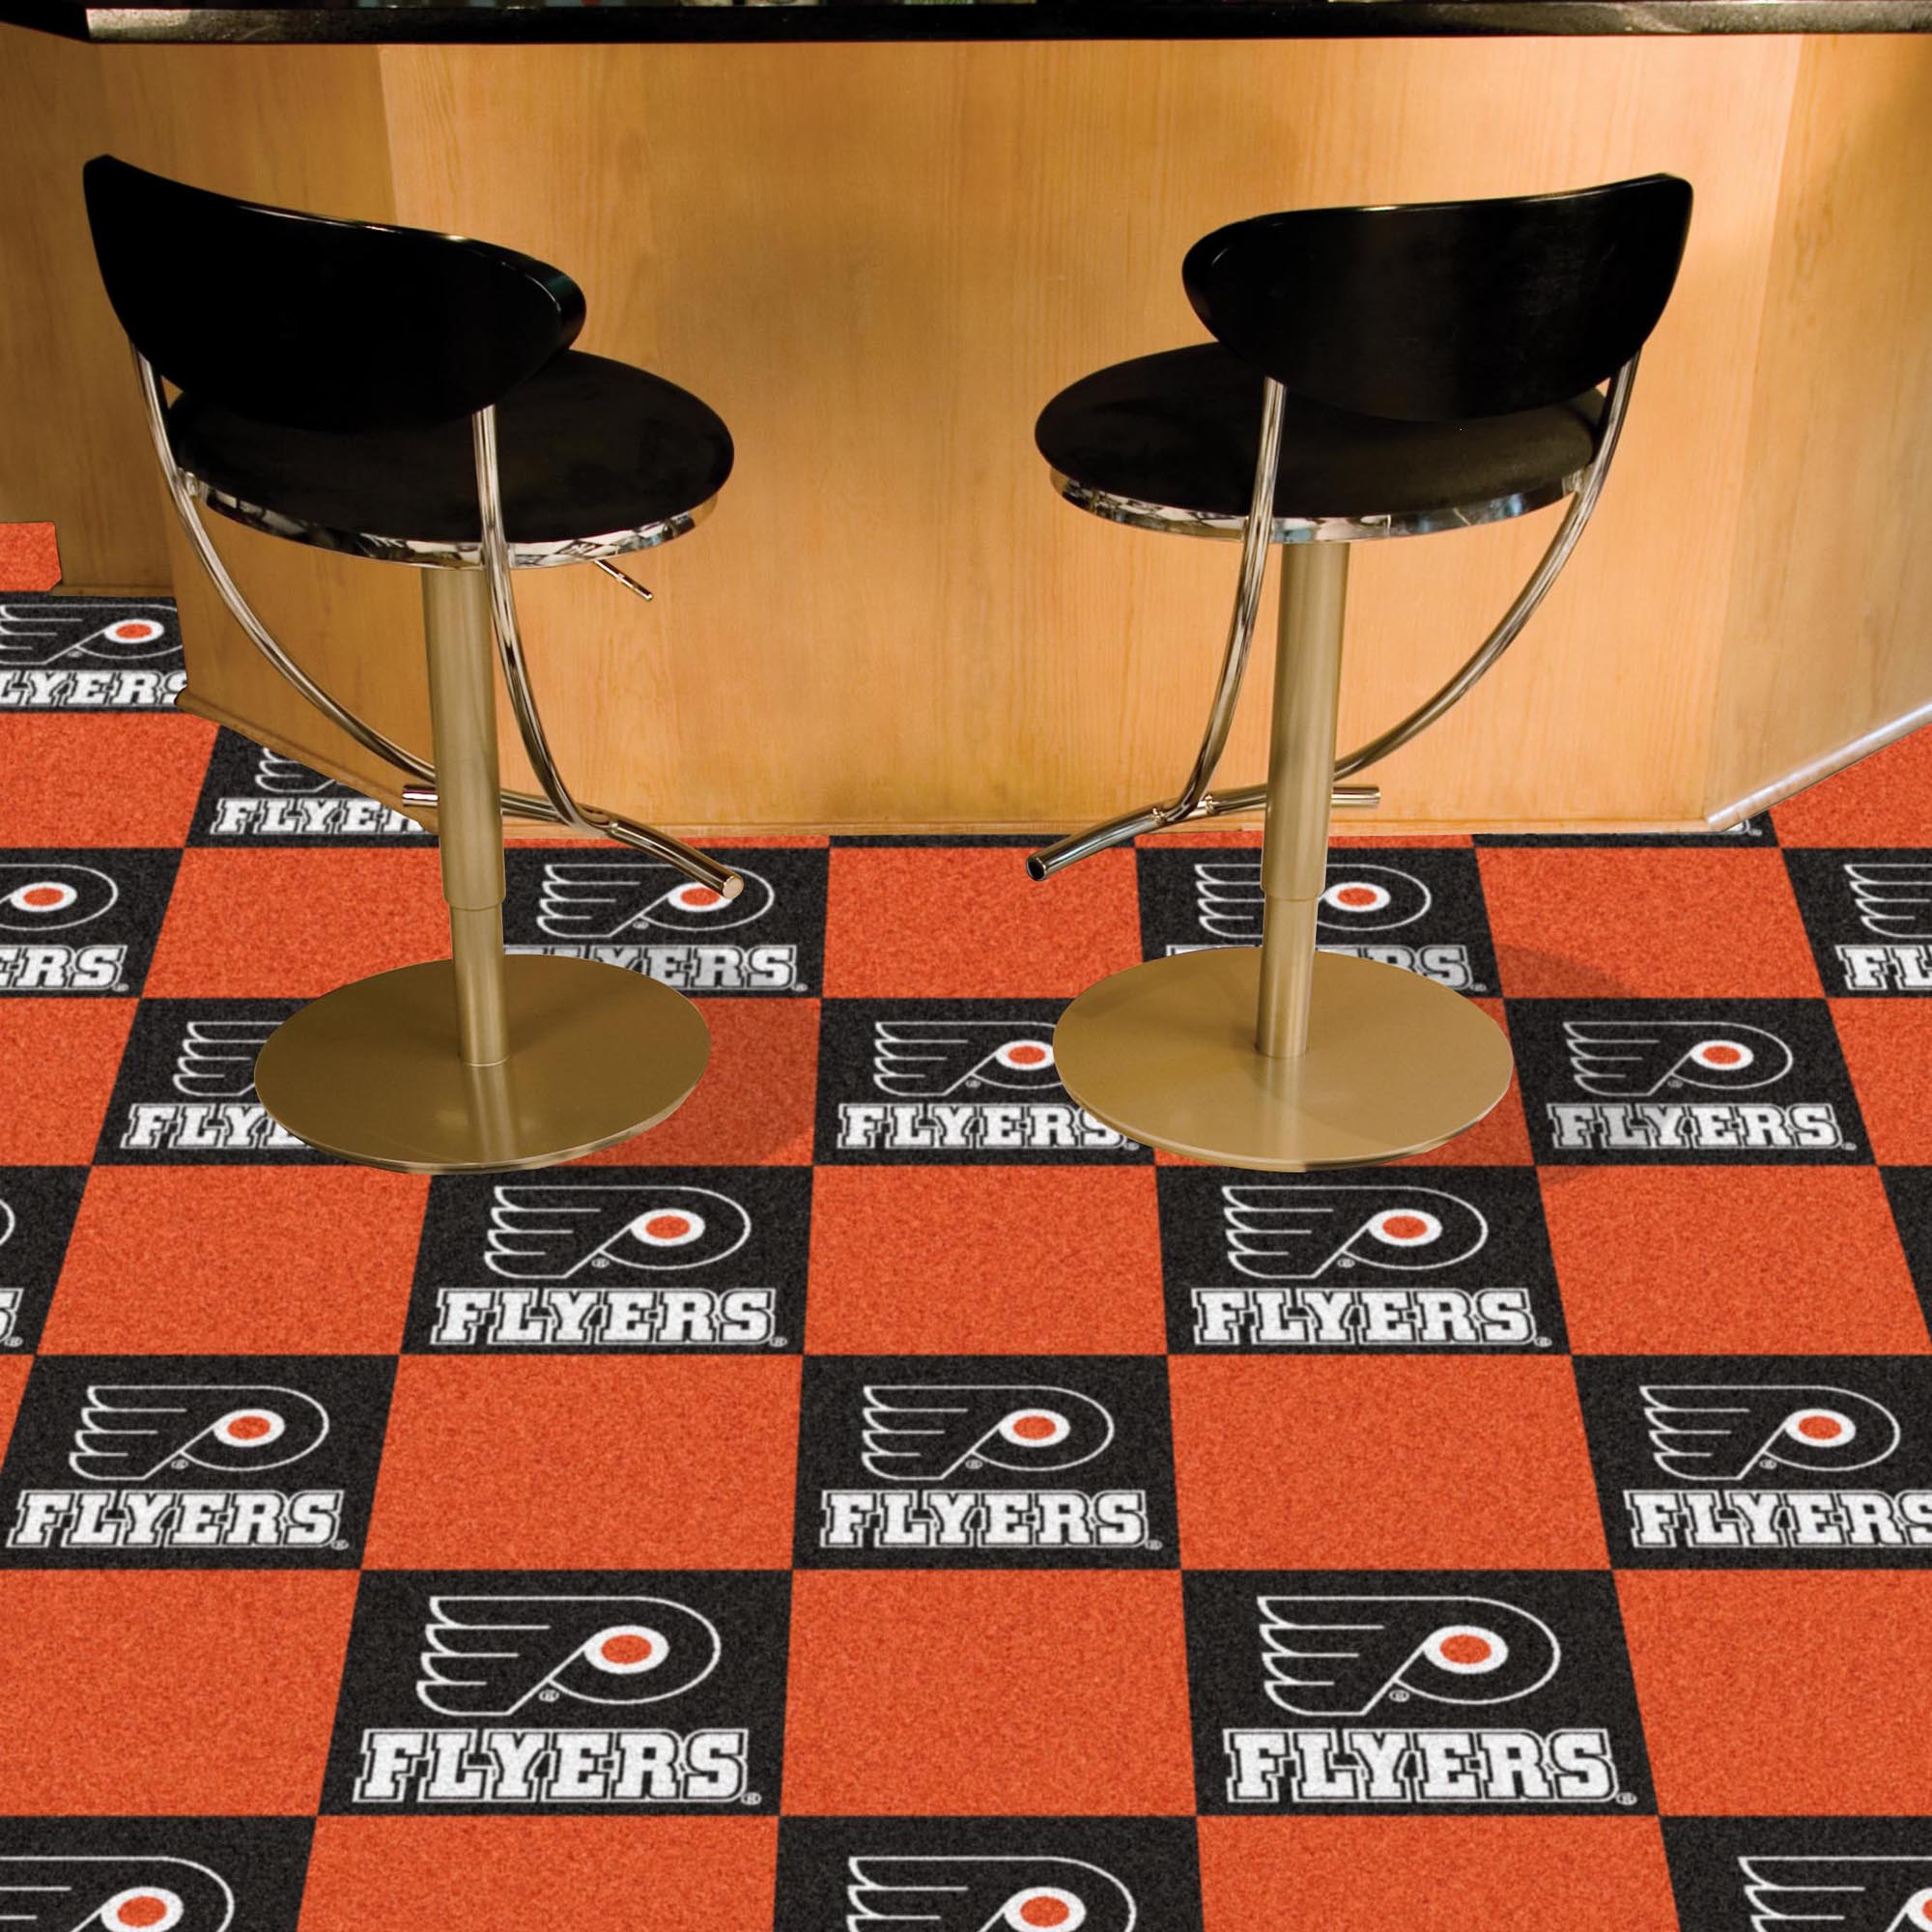 Philadelphia Flyers Carpet Tiles 18x18 in.